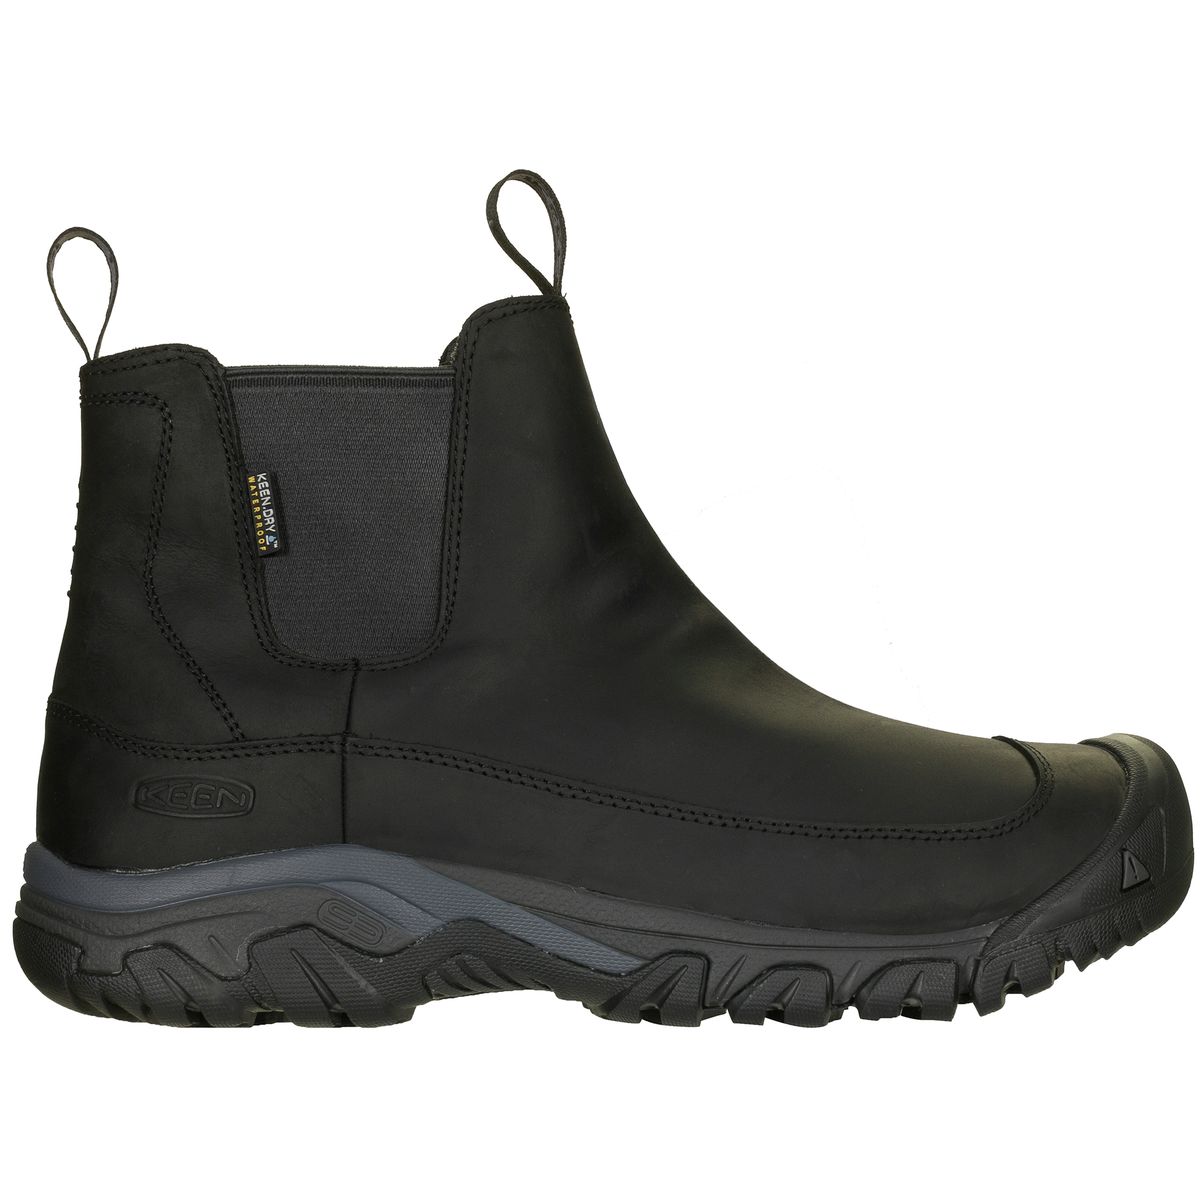 KEEN Anchorage III Waterproof Boot - Men's